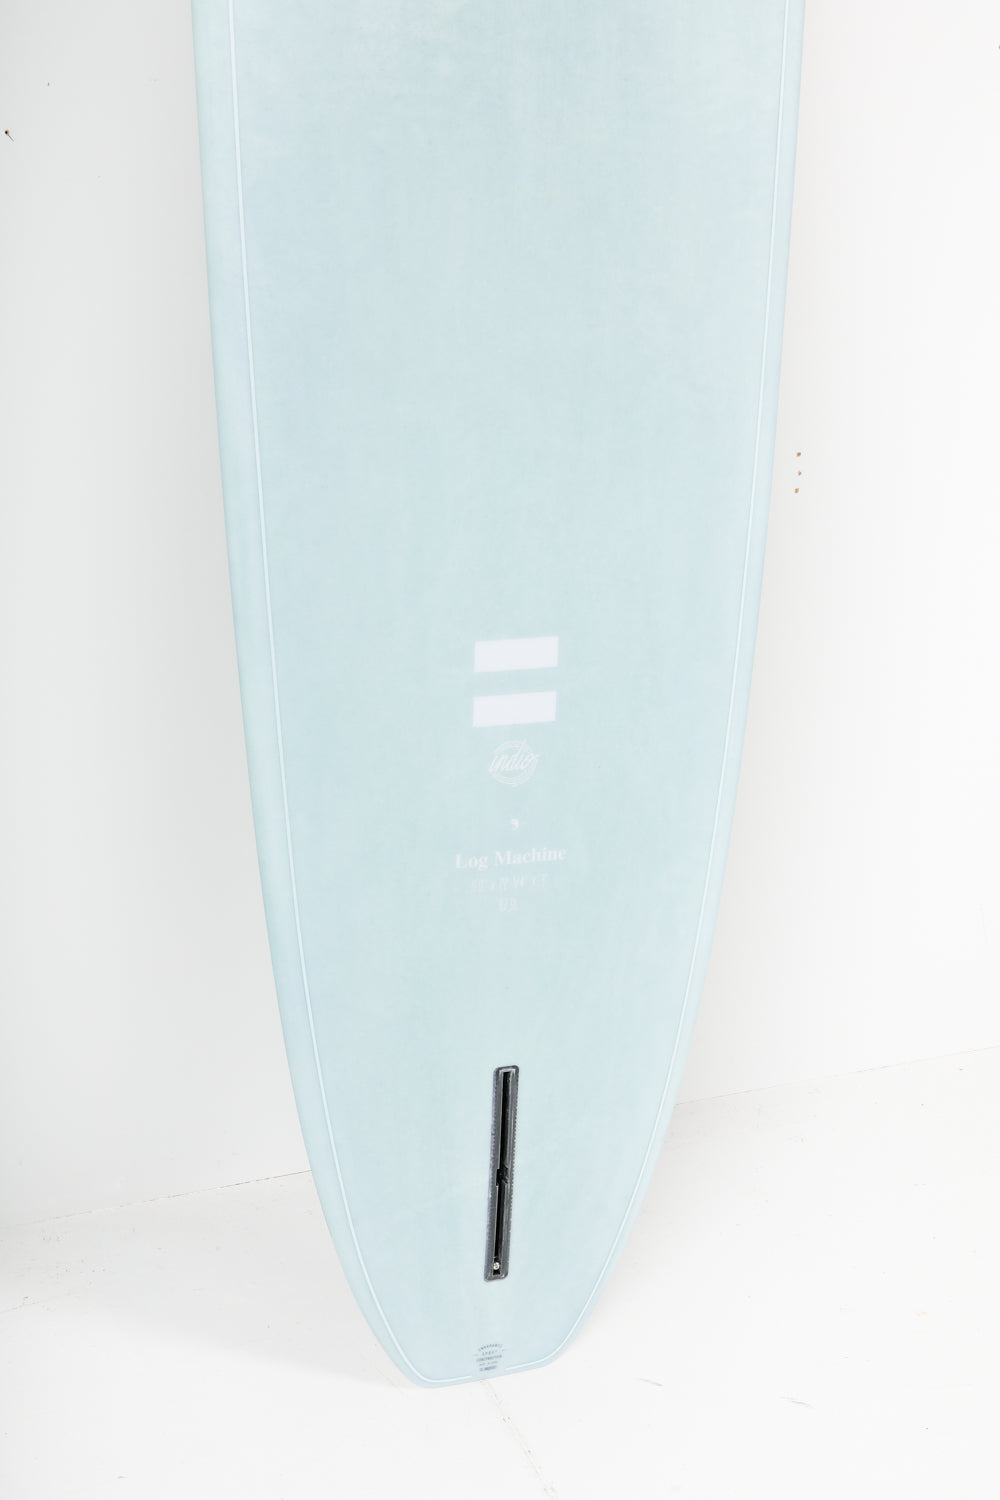 
                  
                    Pukas Surf Shop - Indio Surfboards - LOG MACHINE Aqua Cement - 9´0 x 22 1/4 x 3 - 67,90L
                  
                